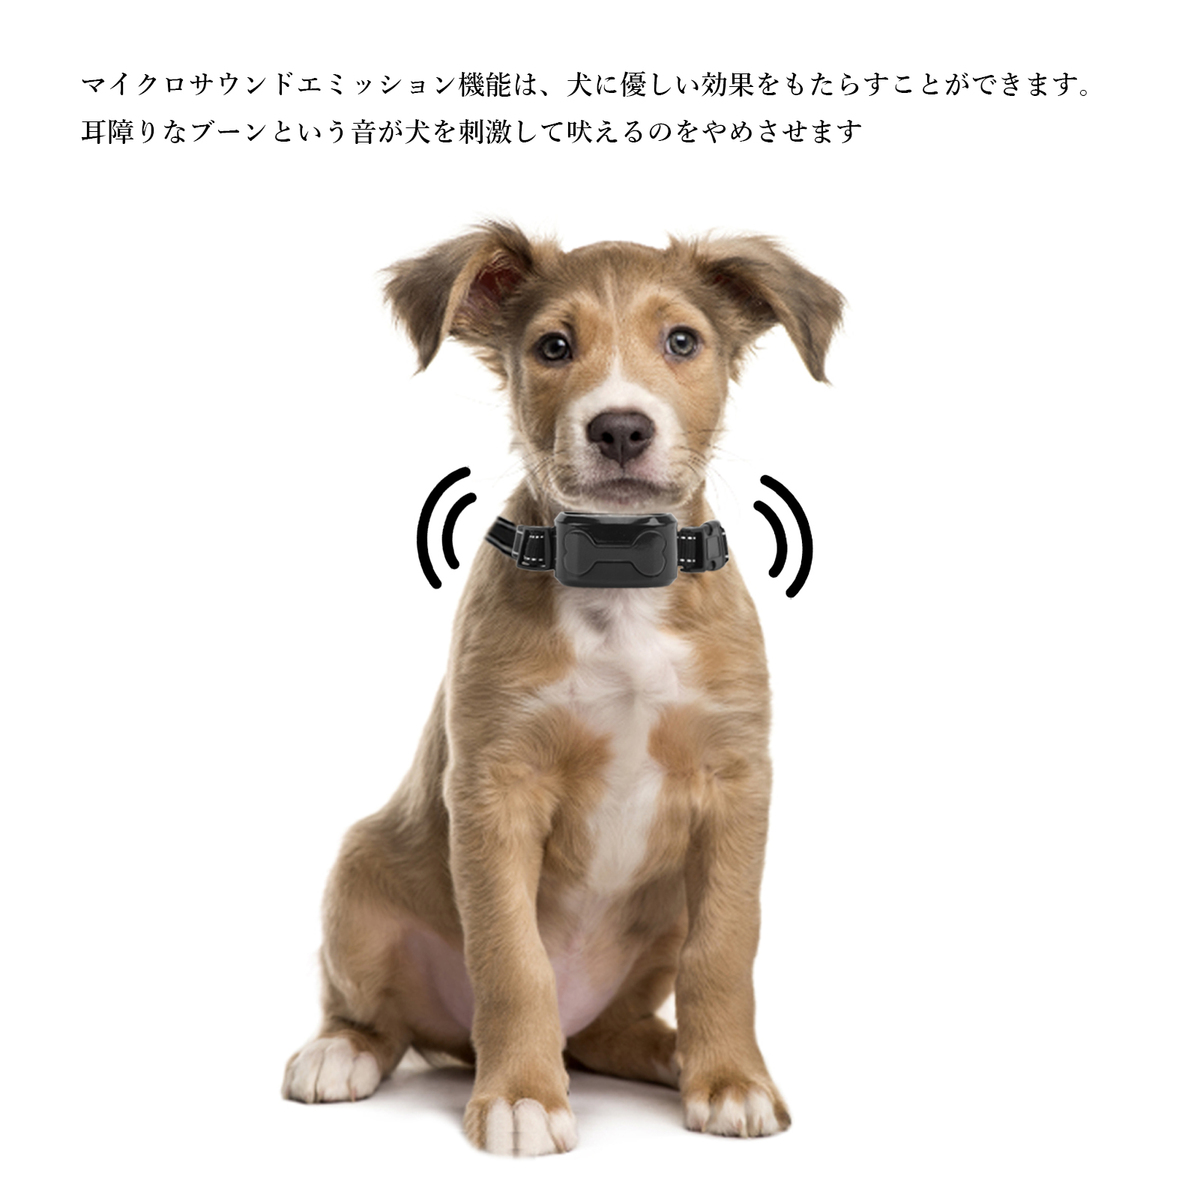 市場 送料無料 安全 無駄吠え防止 自動センサー Usb充電式 吠え防止グッズ 有効 噛み癖 犬訓練しつけ首輪 首輪 犬